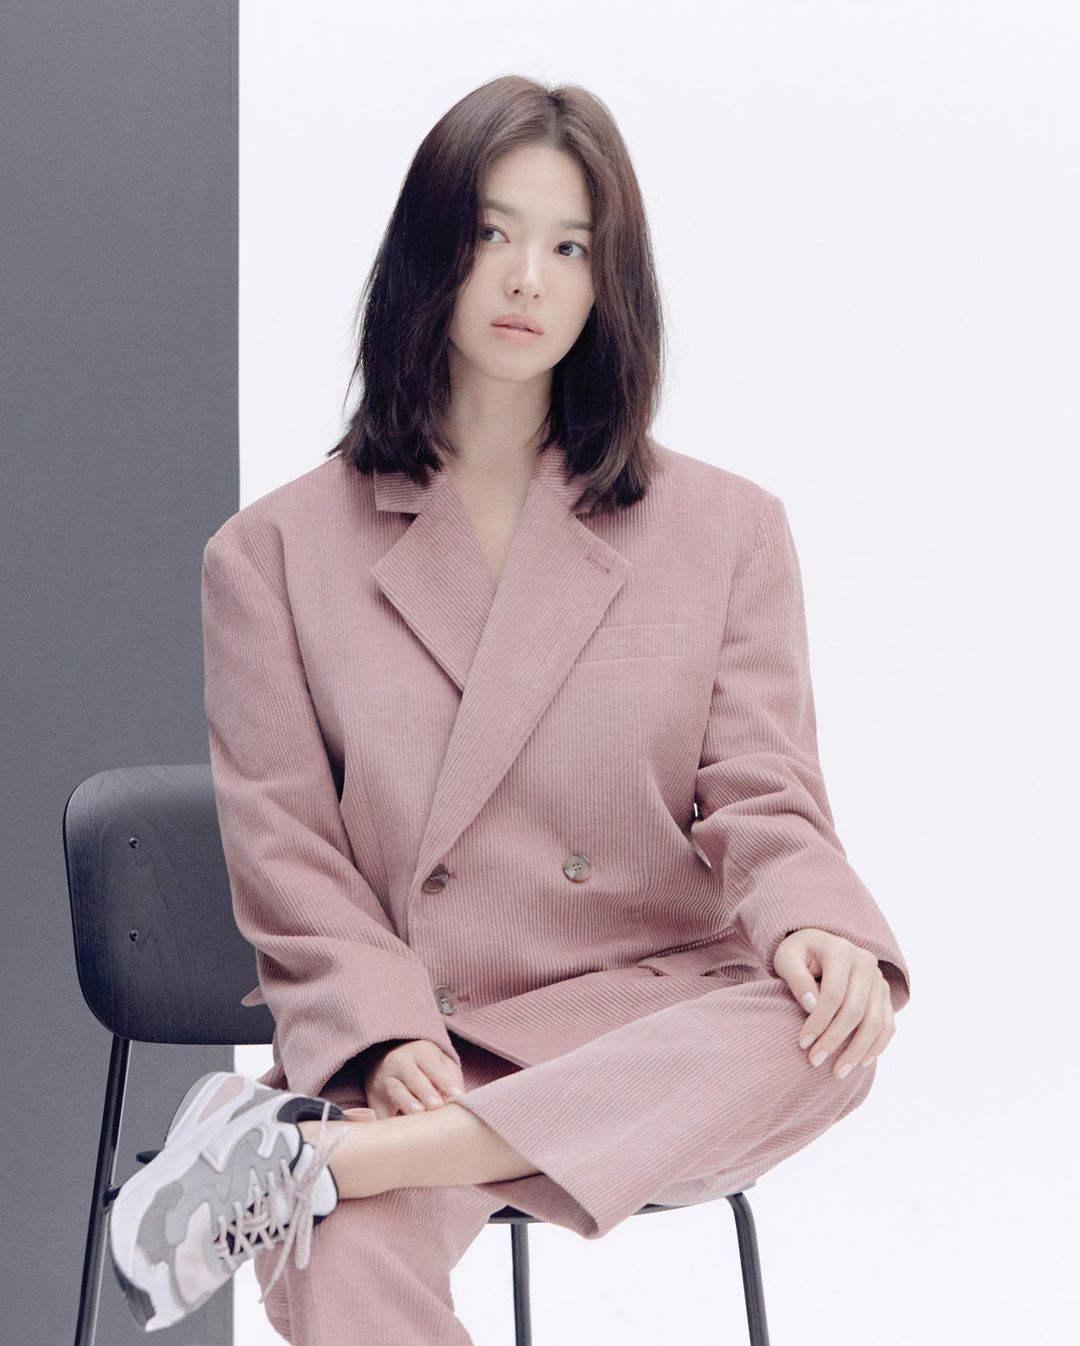 Song Hye Kyo diện đồ màu hồng sang chảnh ngút ngàn, không bao giờ mắc lỗi - Ảnh 5.